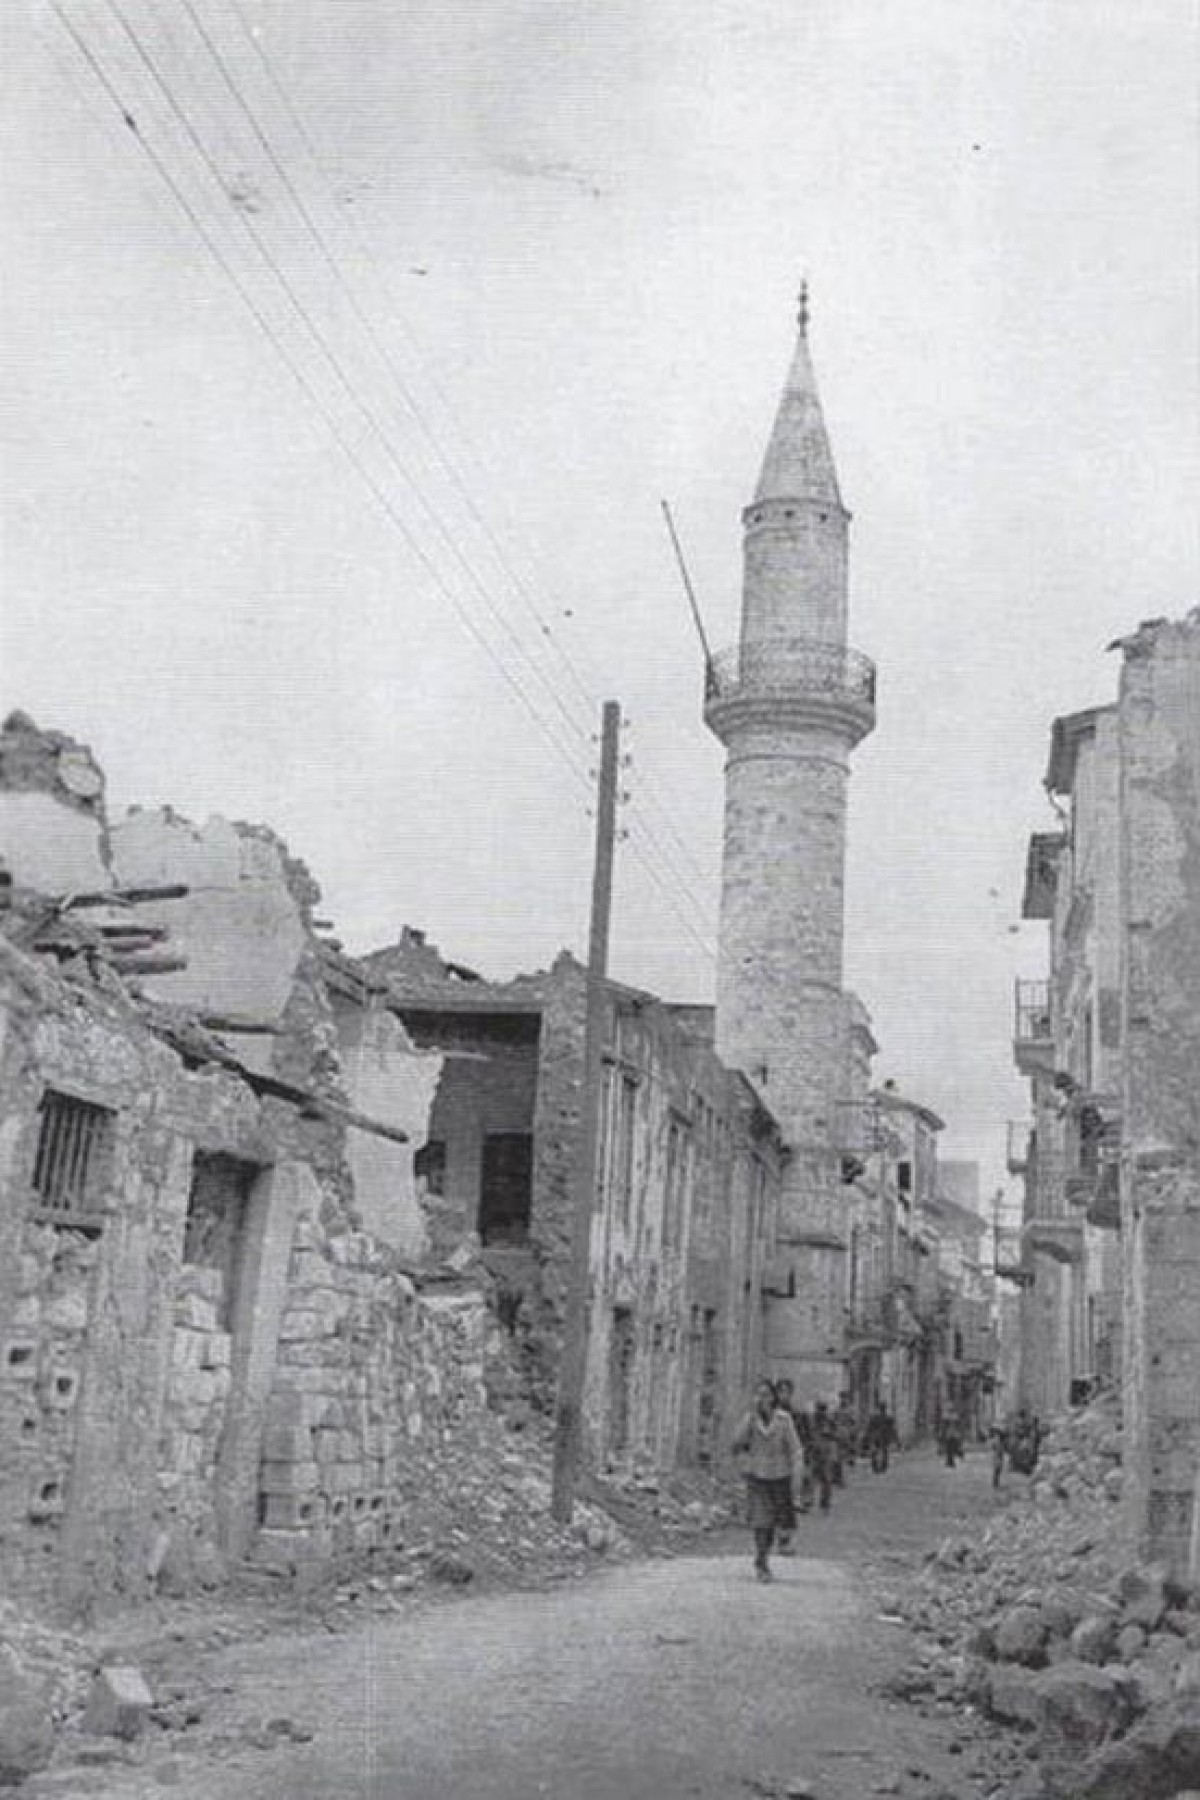 1941, οδός Χατζημιχάλη Νταλιάνη μετά τους βομβαρδισμούς. Ο μιναρές και το τζαμί του Αγά Χαν παραμένουν ανέπαφα.